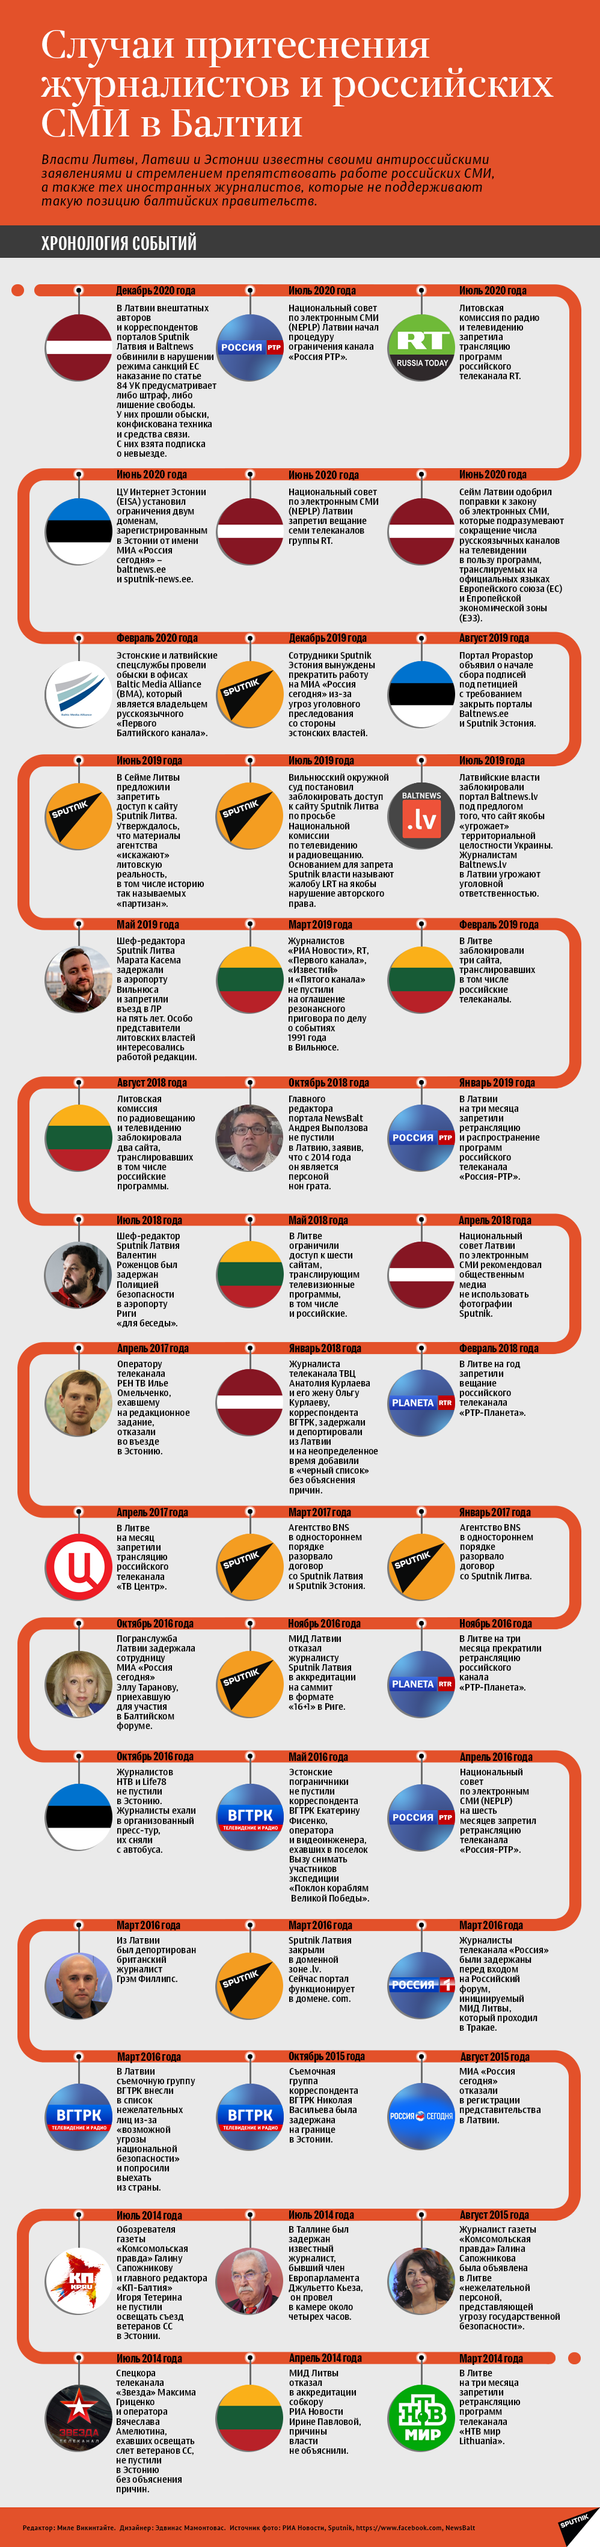 Как в странах Балтии притесняют журналистов — случаи за 6 лет. Инфографика - Sputnik Кыргызстан